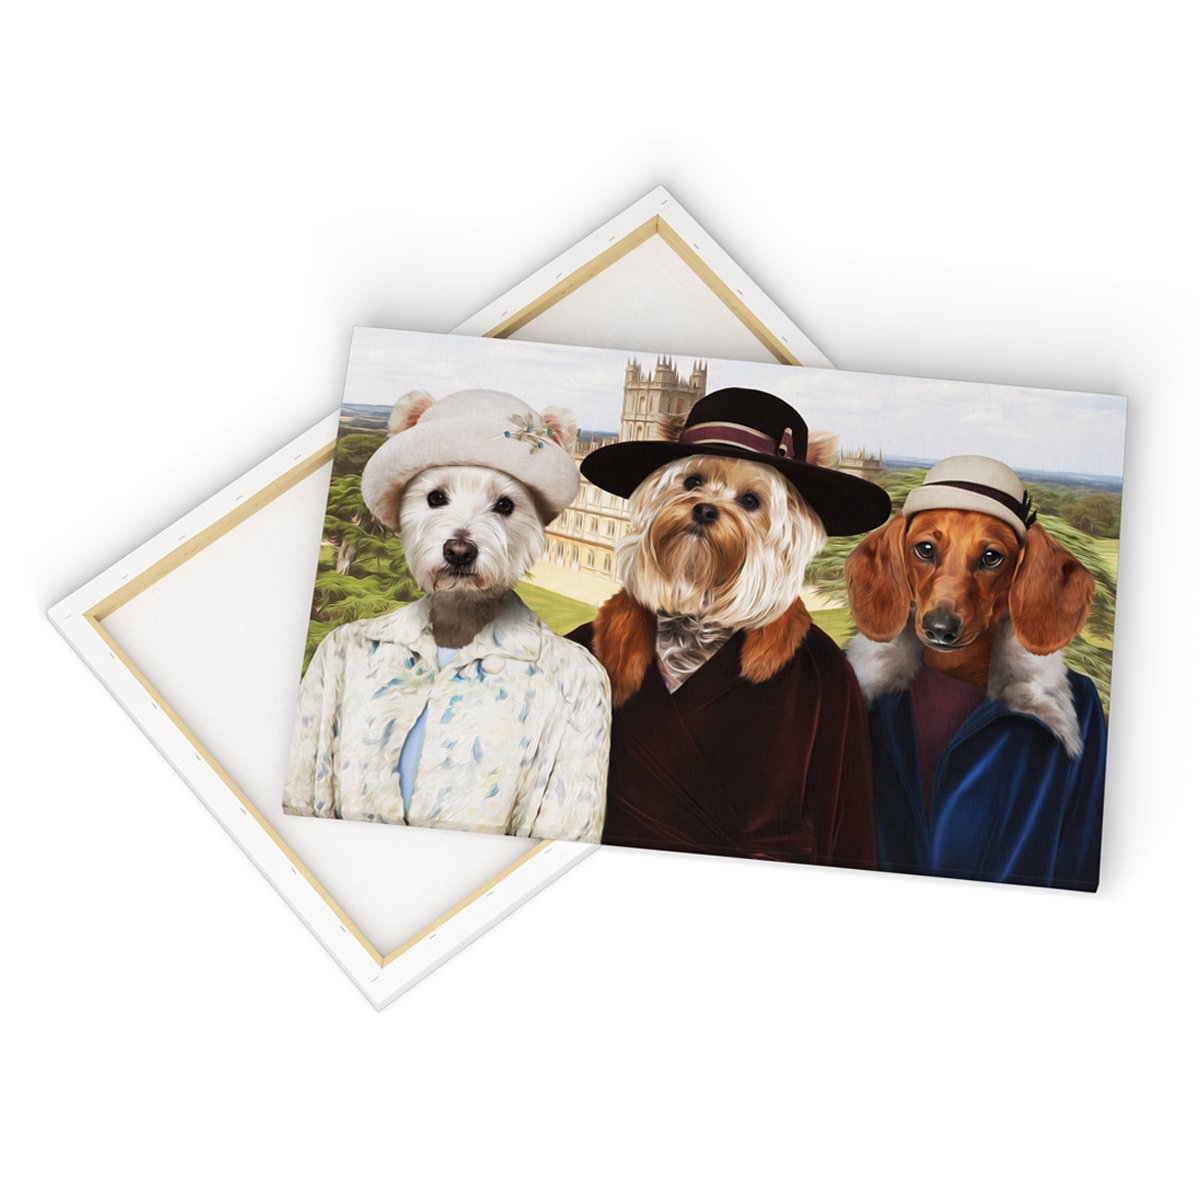 Print Your Digital 3 Pet Portrait On A Canvas - Paw & Glory - #pet portraits# - #dog portraits# - #pet portraits uk#paw & glory, pet portraits canvas,custom pet canvas art, personalized dog canvas print, dog canvas custom, canvas of pet, dog canvas painting